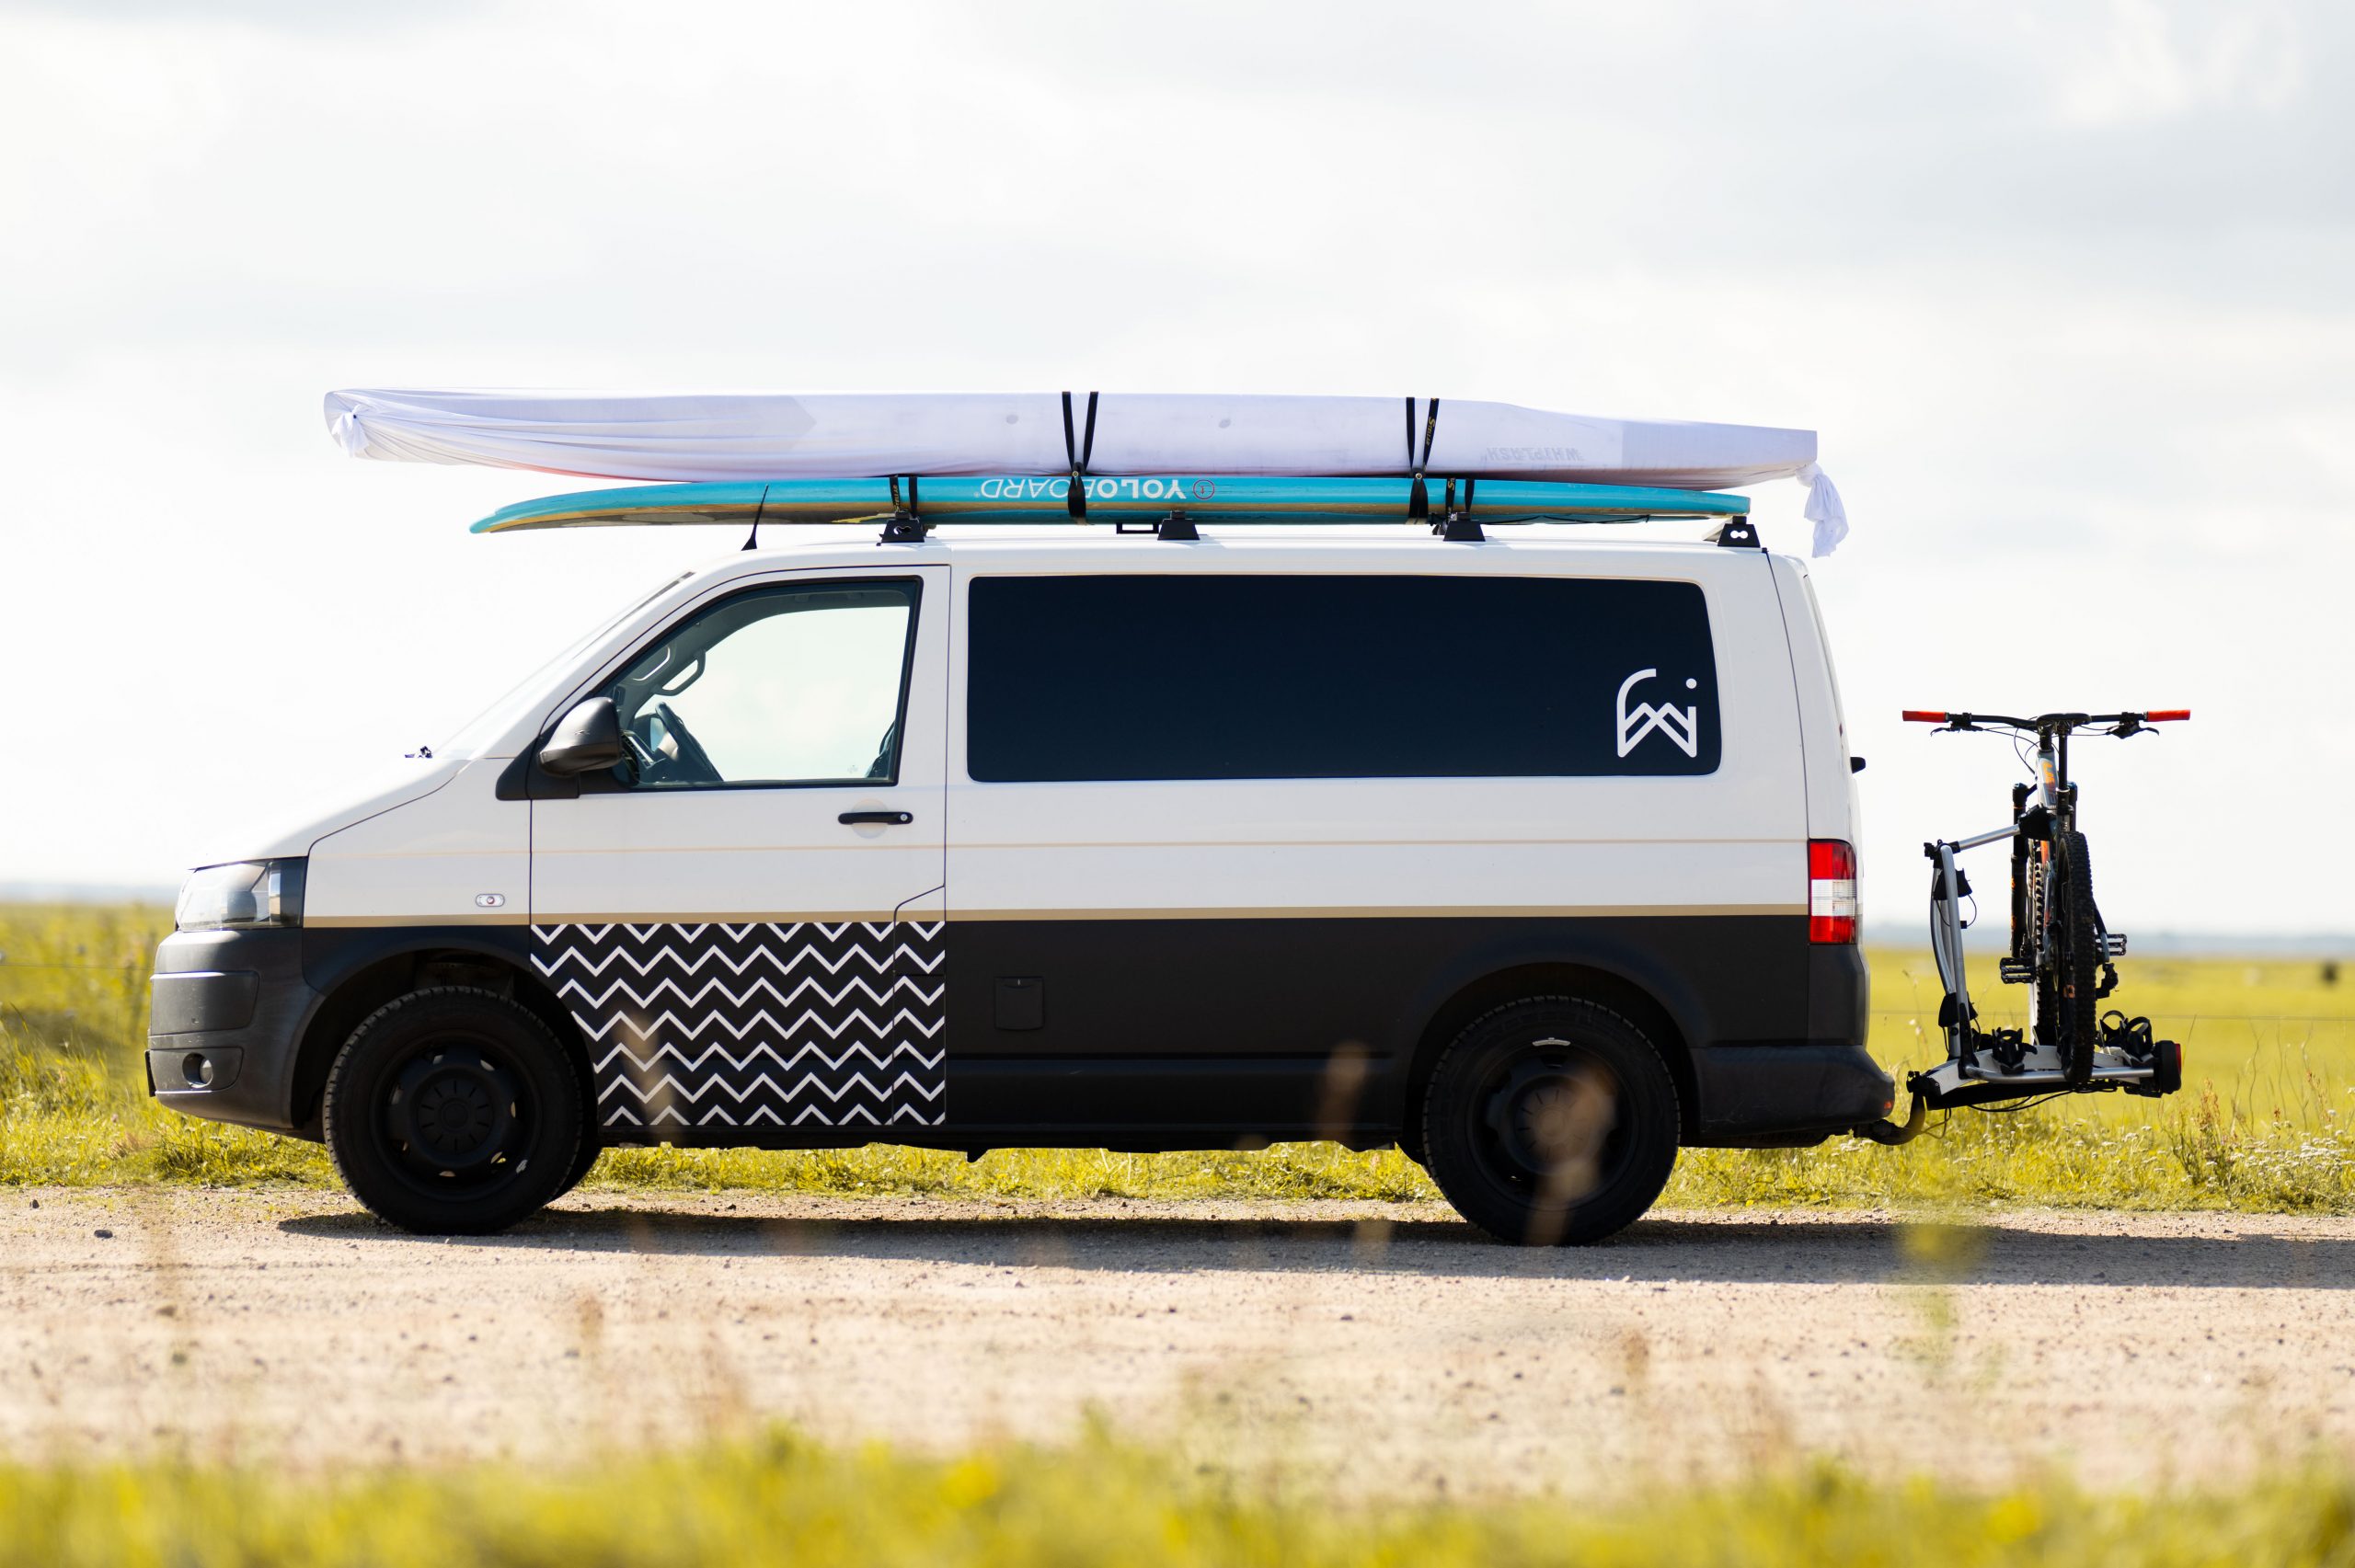 Camping Zubehör: Damit wird dein Van zum rollenden Zuhause